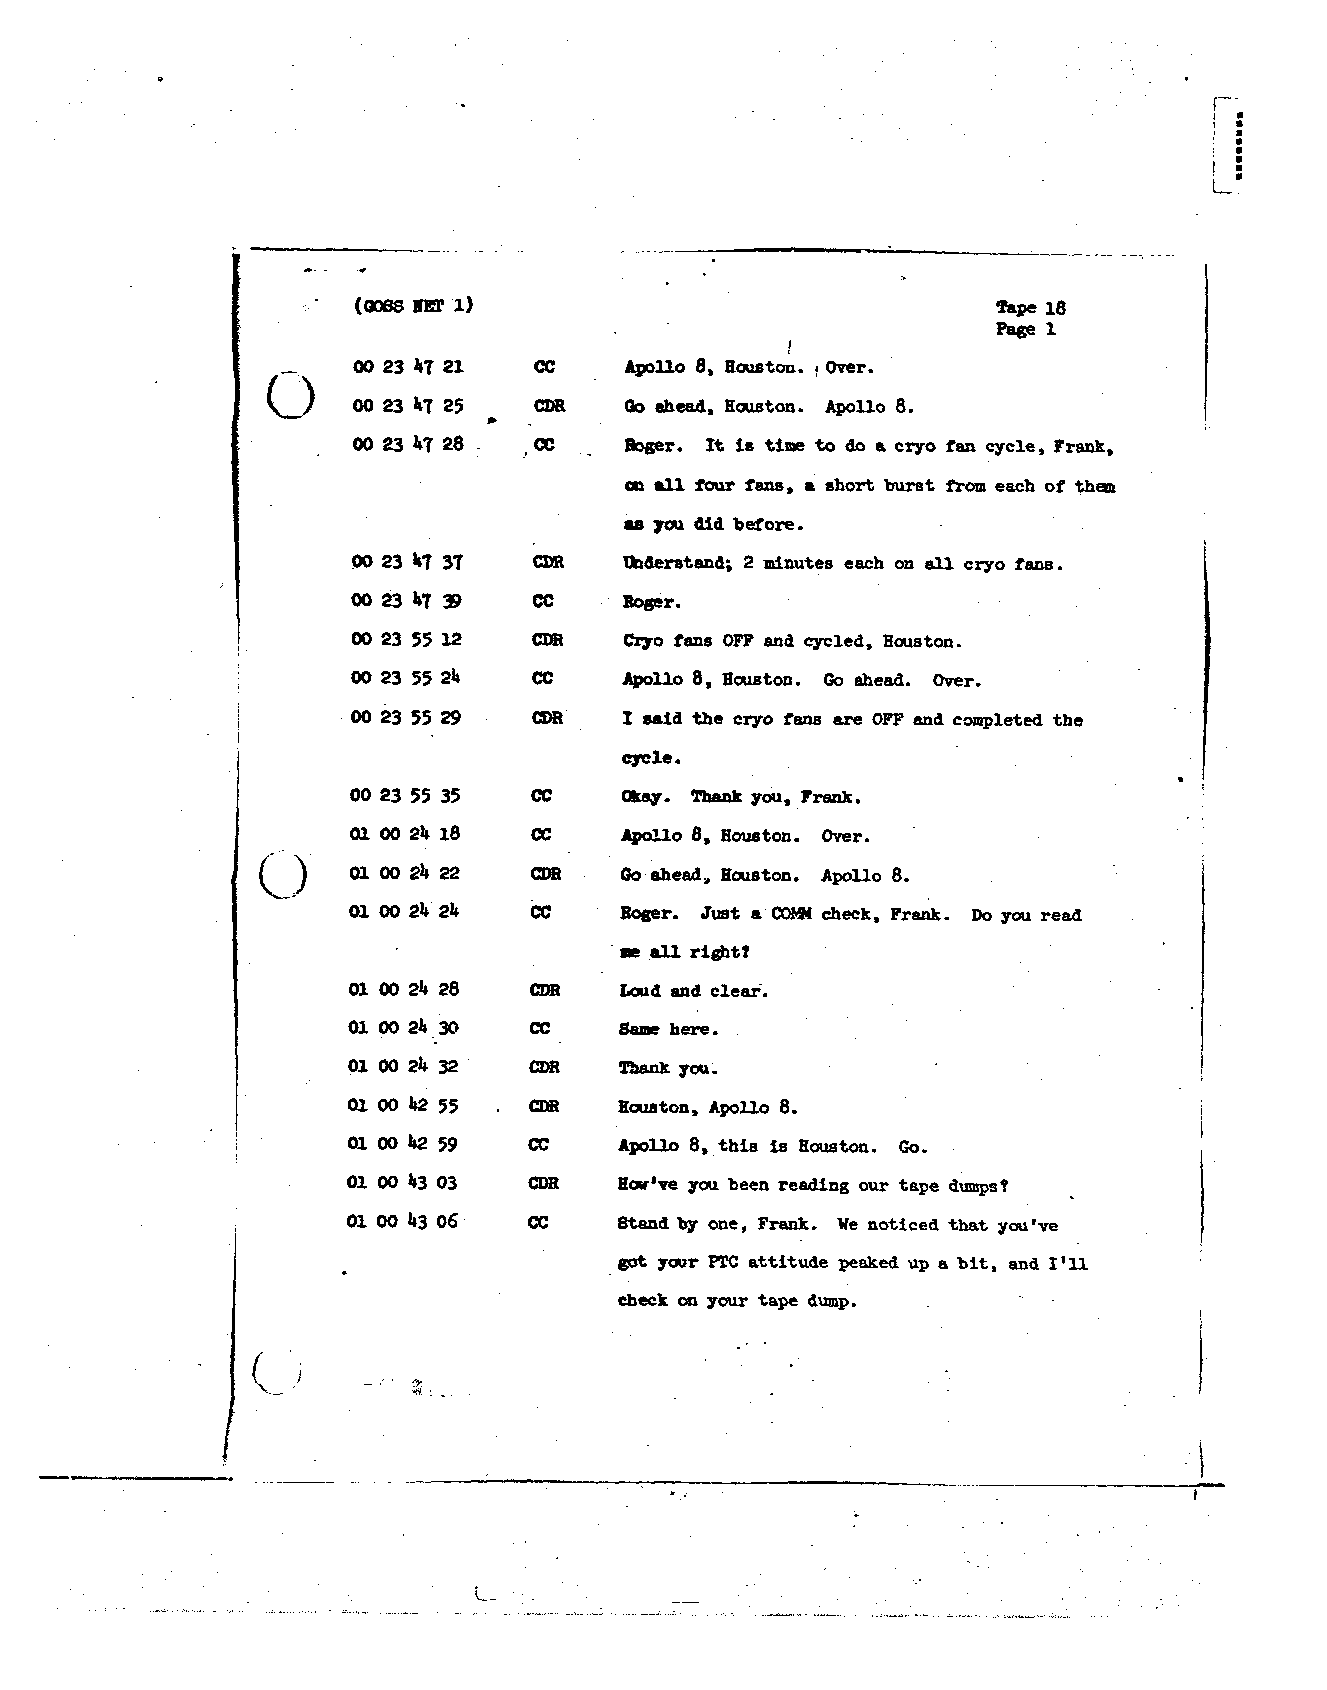 Page 136 of Apollo 8’s original transcript